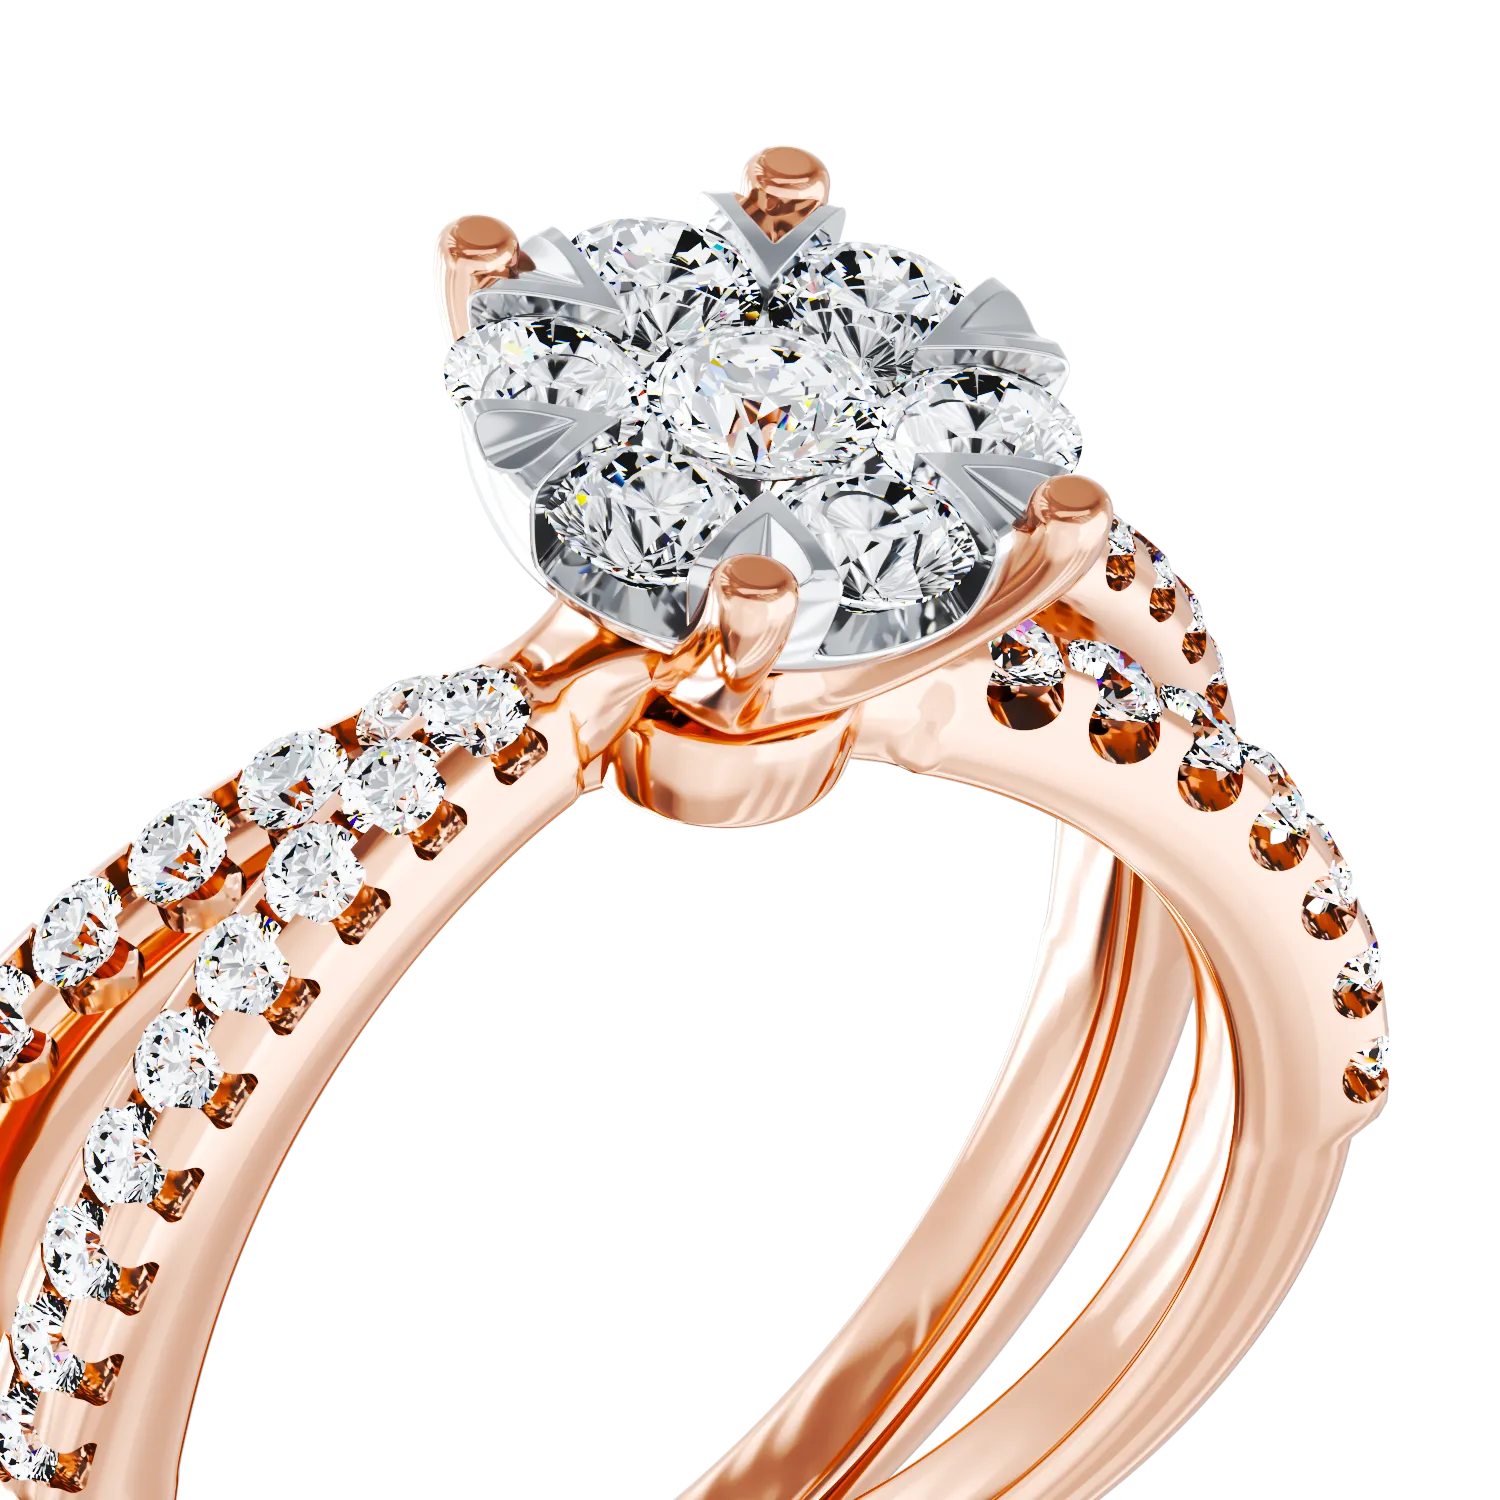 Inel de logodna din aur roz de 18K cu diamante de 0.6ct